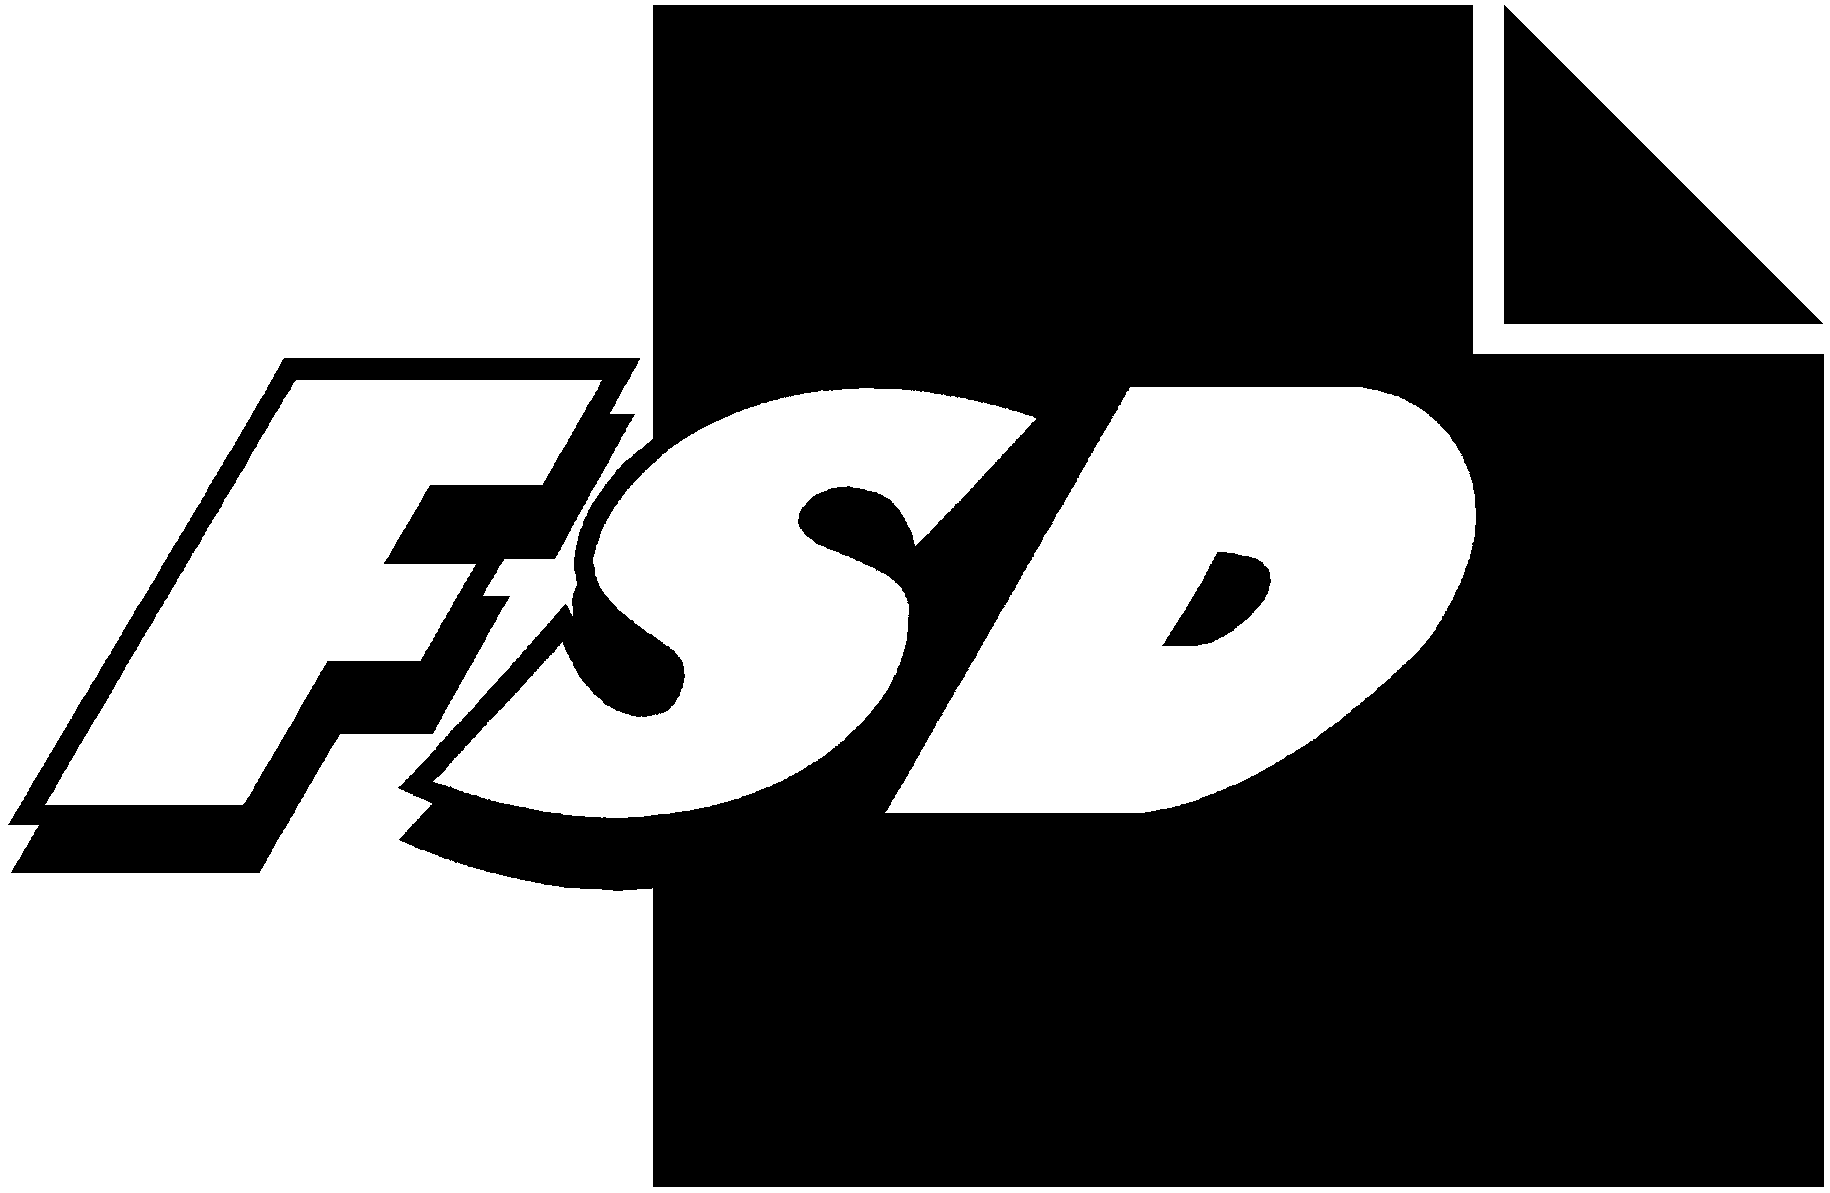 FSD1128 Juvenile Delinquency in Finland 1995